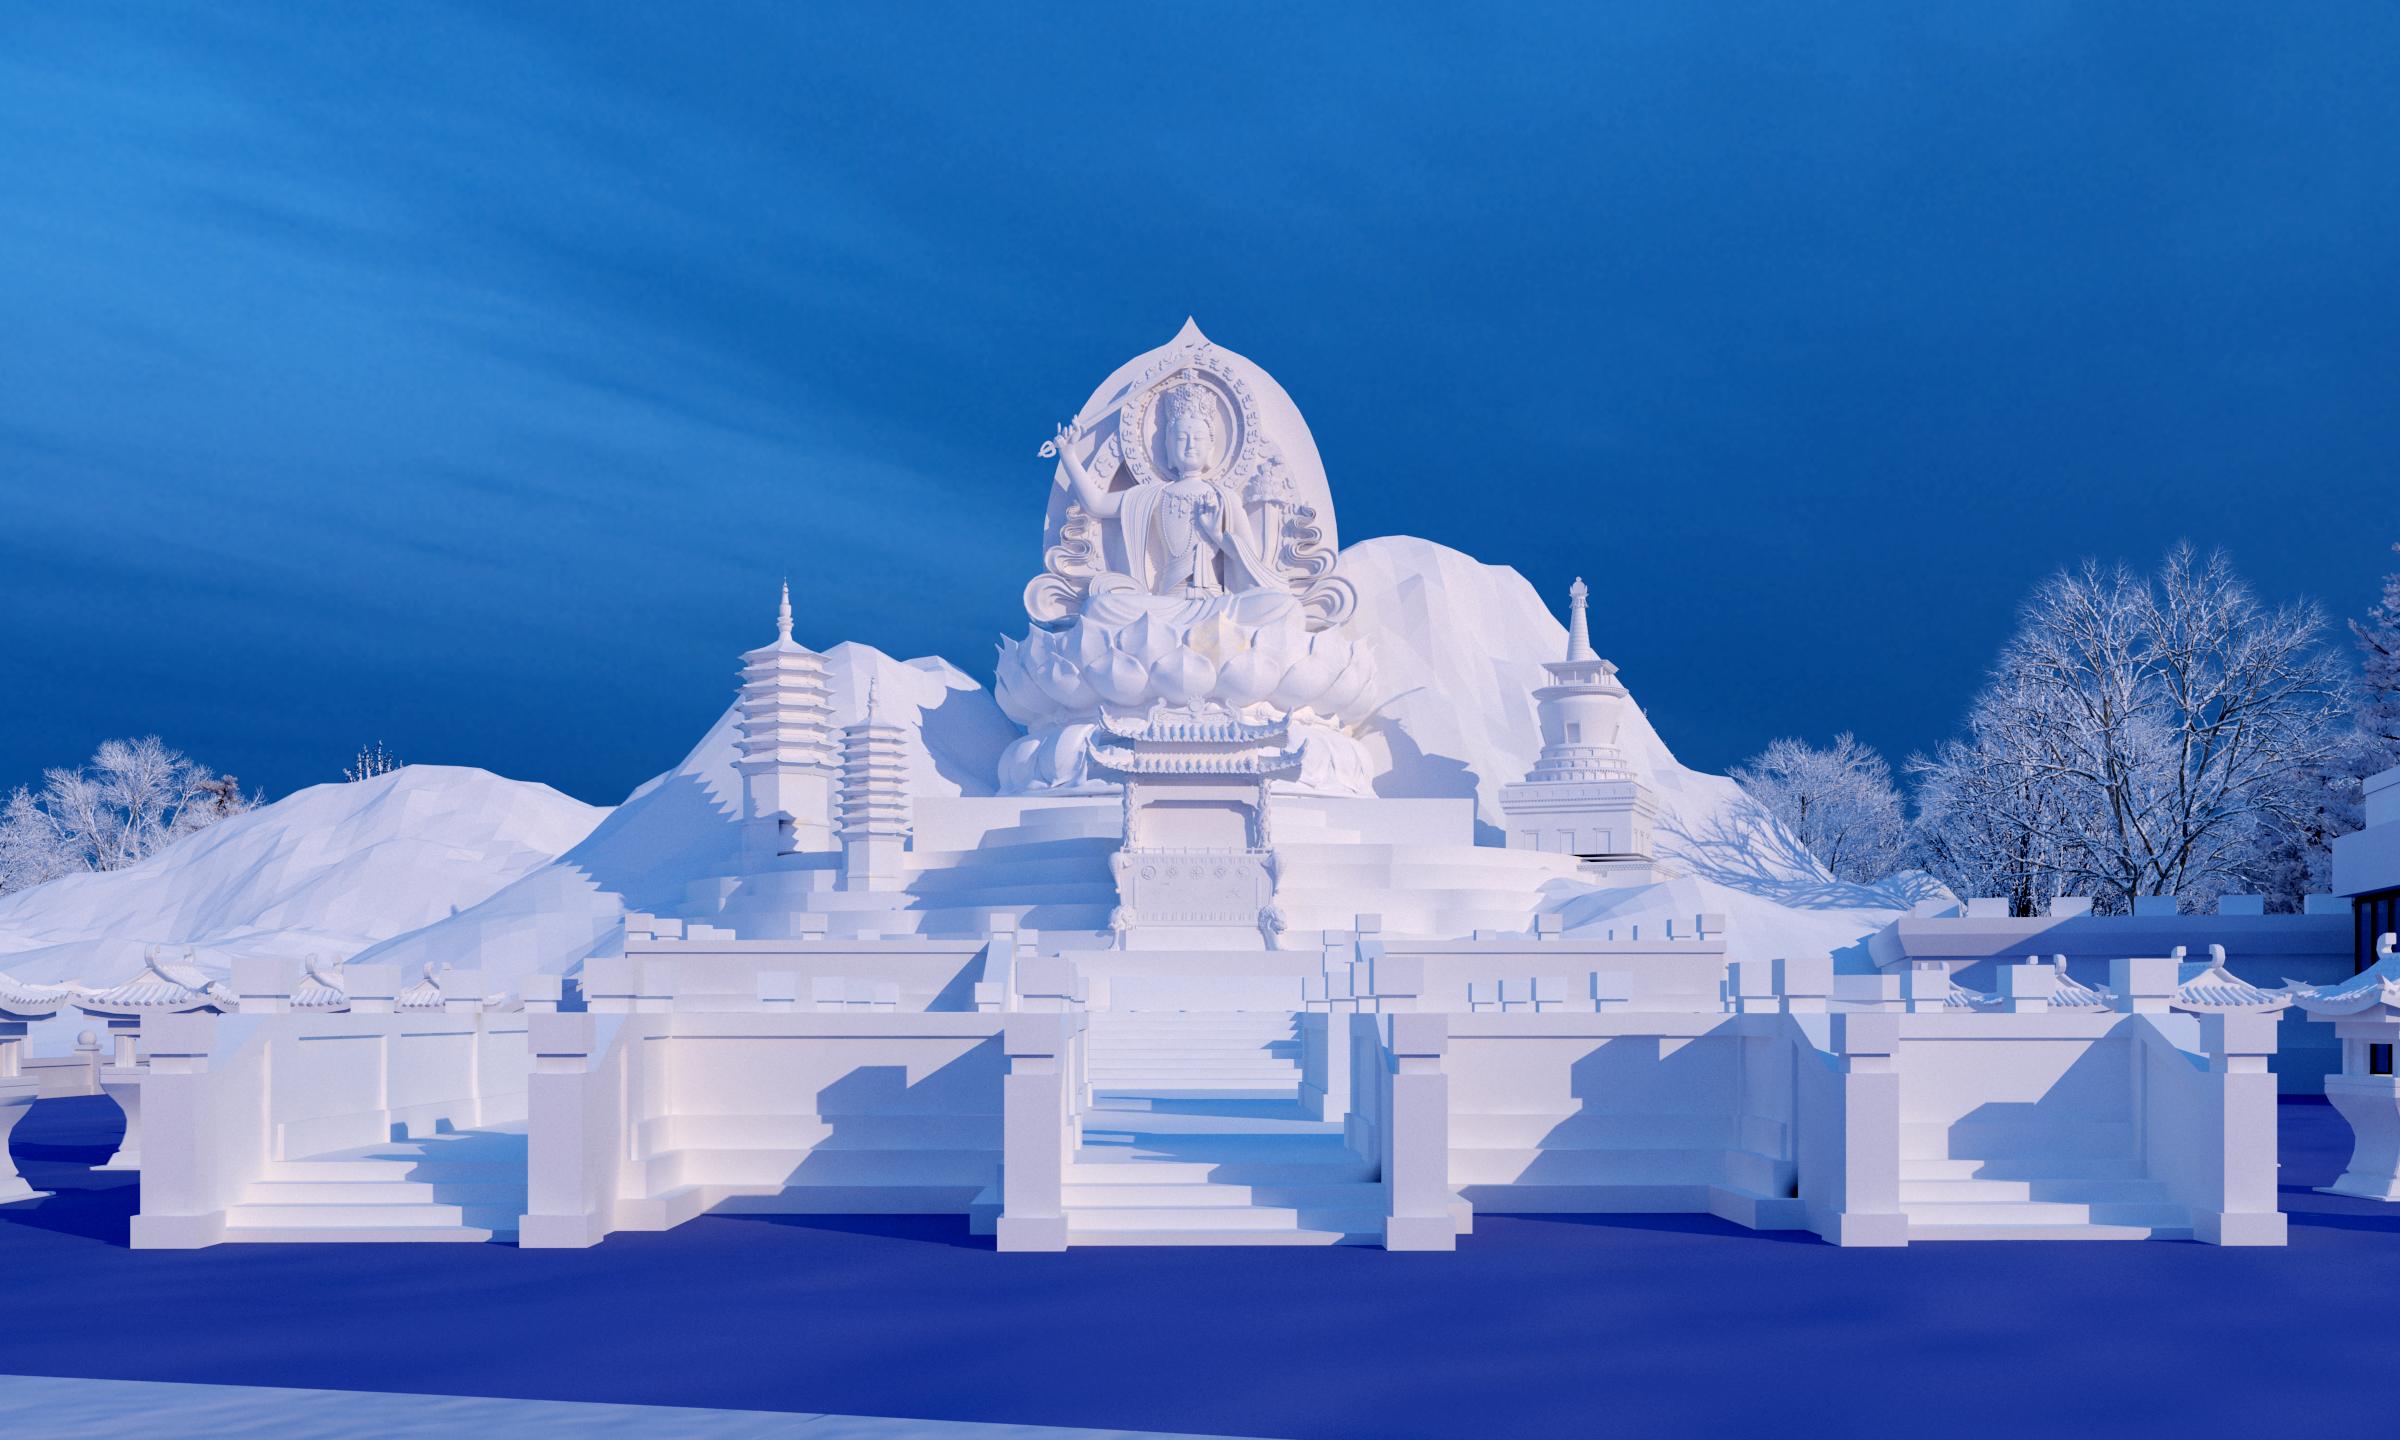 「哈尔滨冰雪大世界」是一个什么景点,有什么吸引人的地方和游览建议?